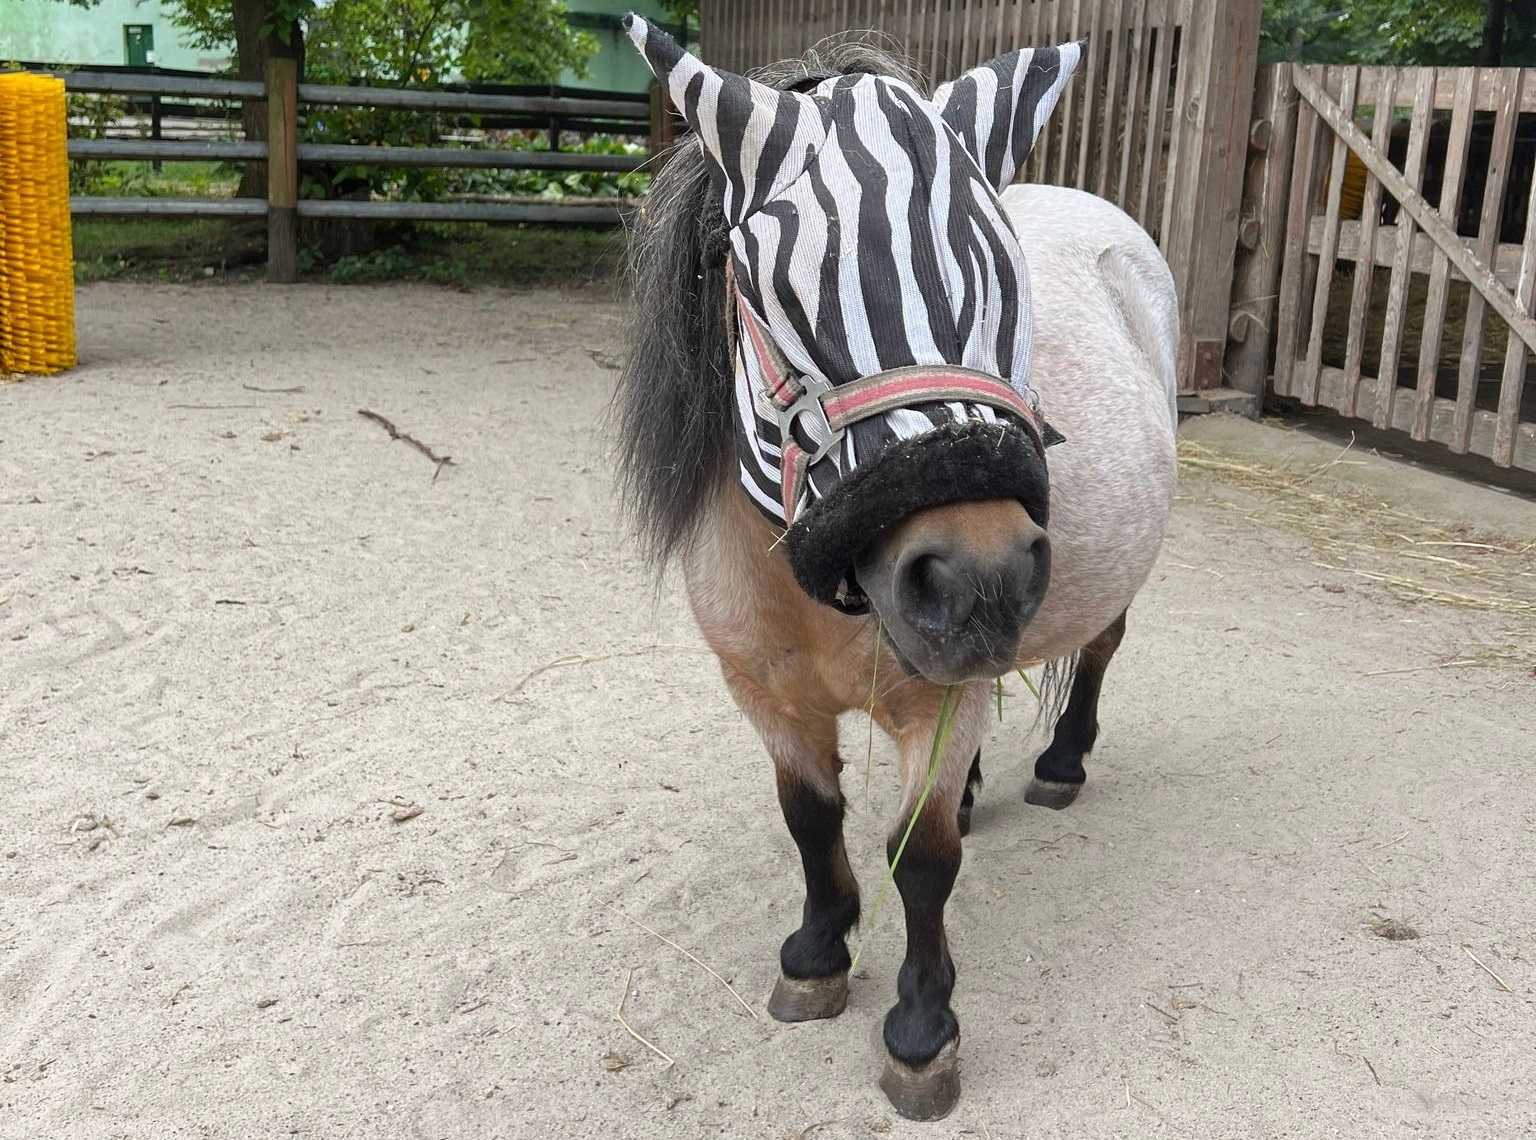 Lopke, klacz kuca szetlandzkiego od niedawna nosi siateczkową maskę zebry.